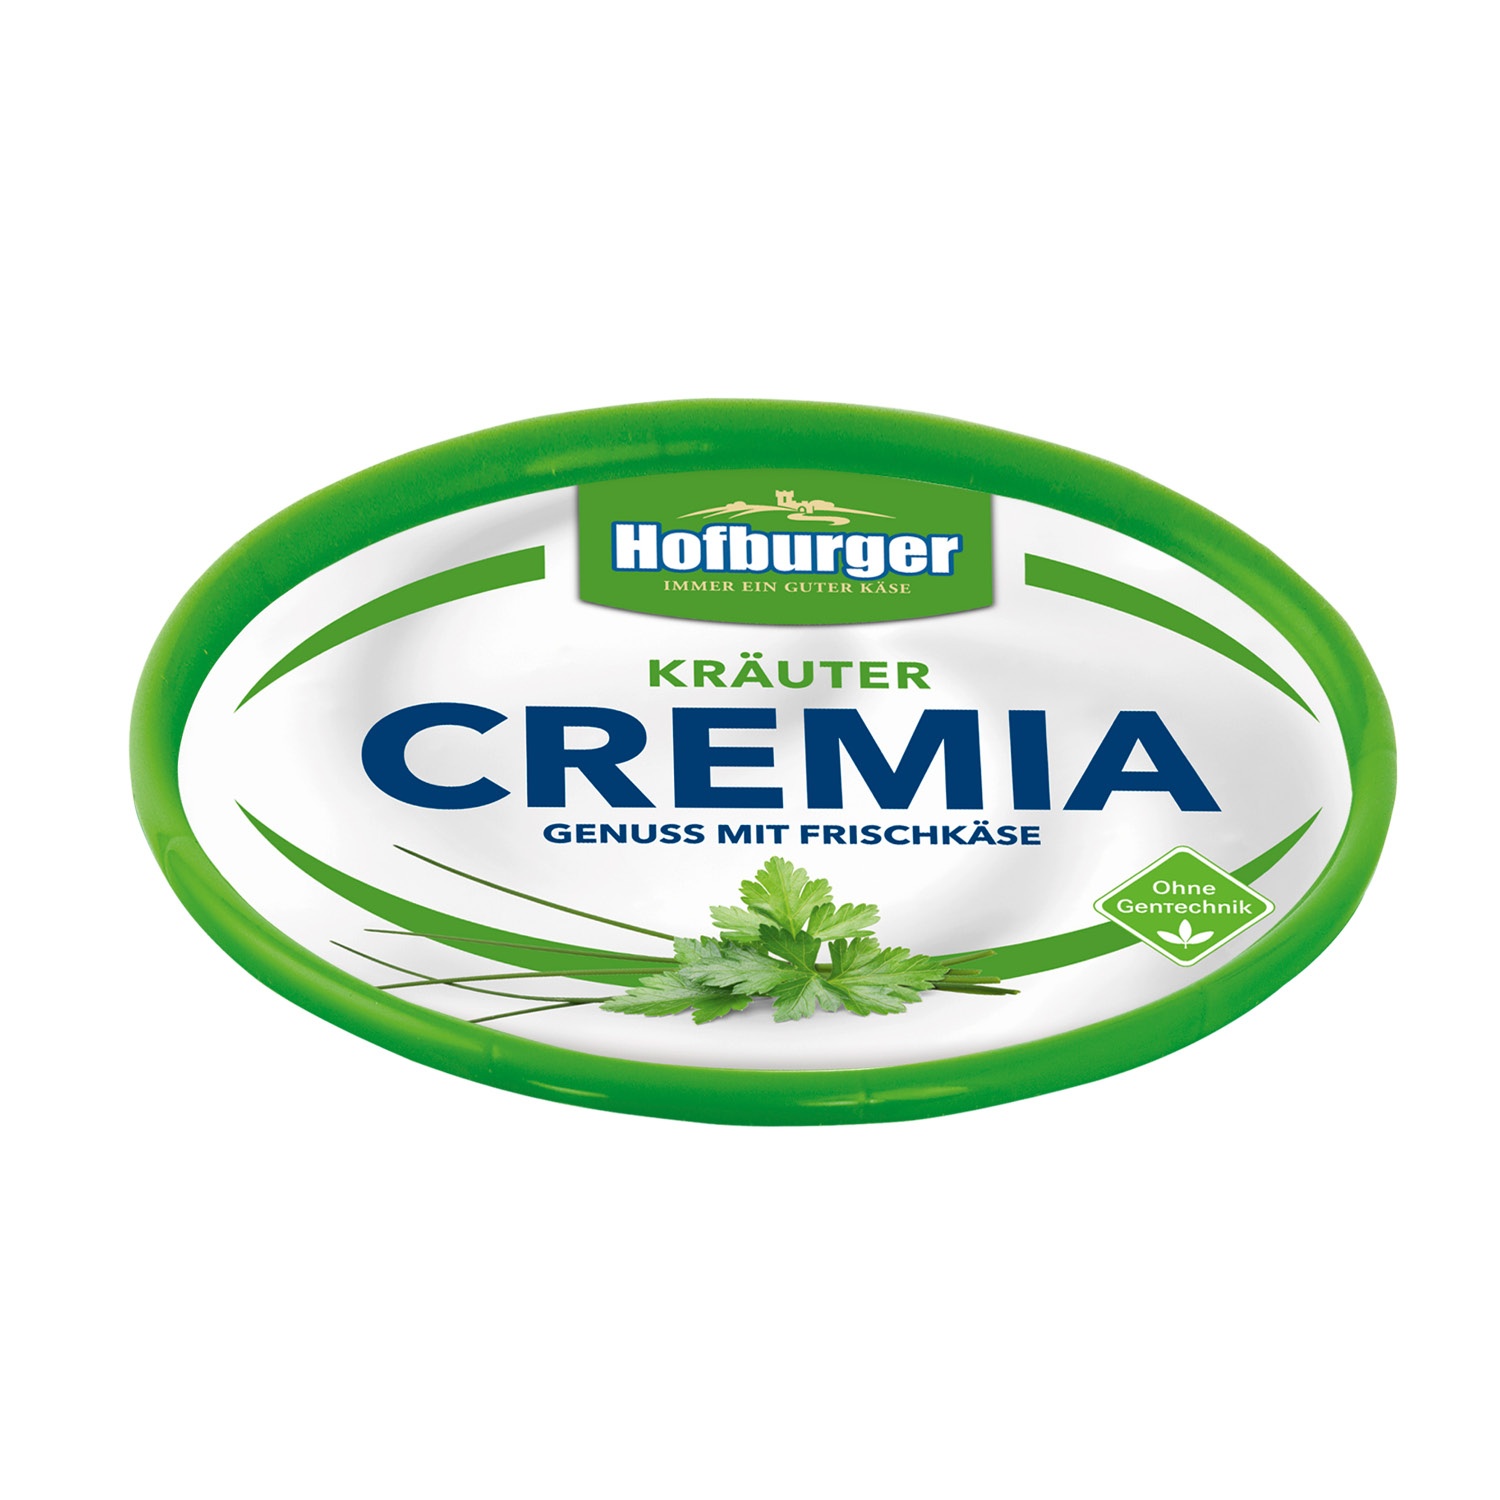 HOFBURGER Cremia Genuss mit Frischkäse 175 g